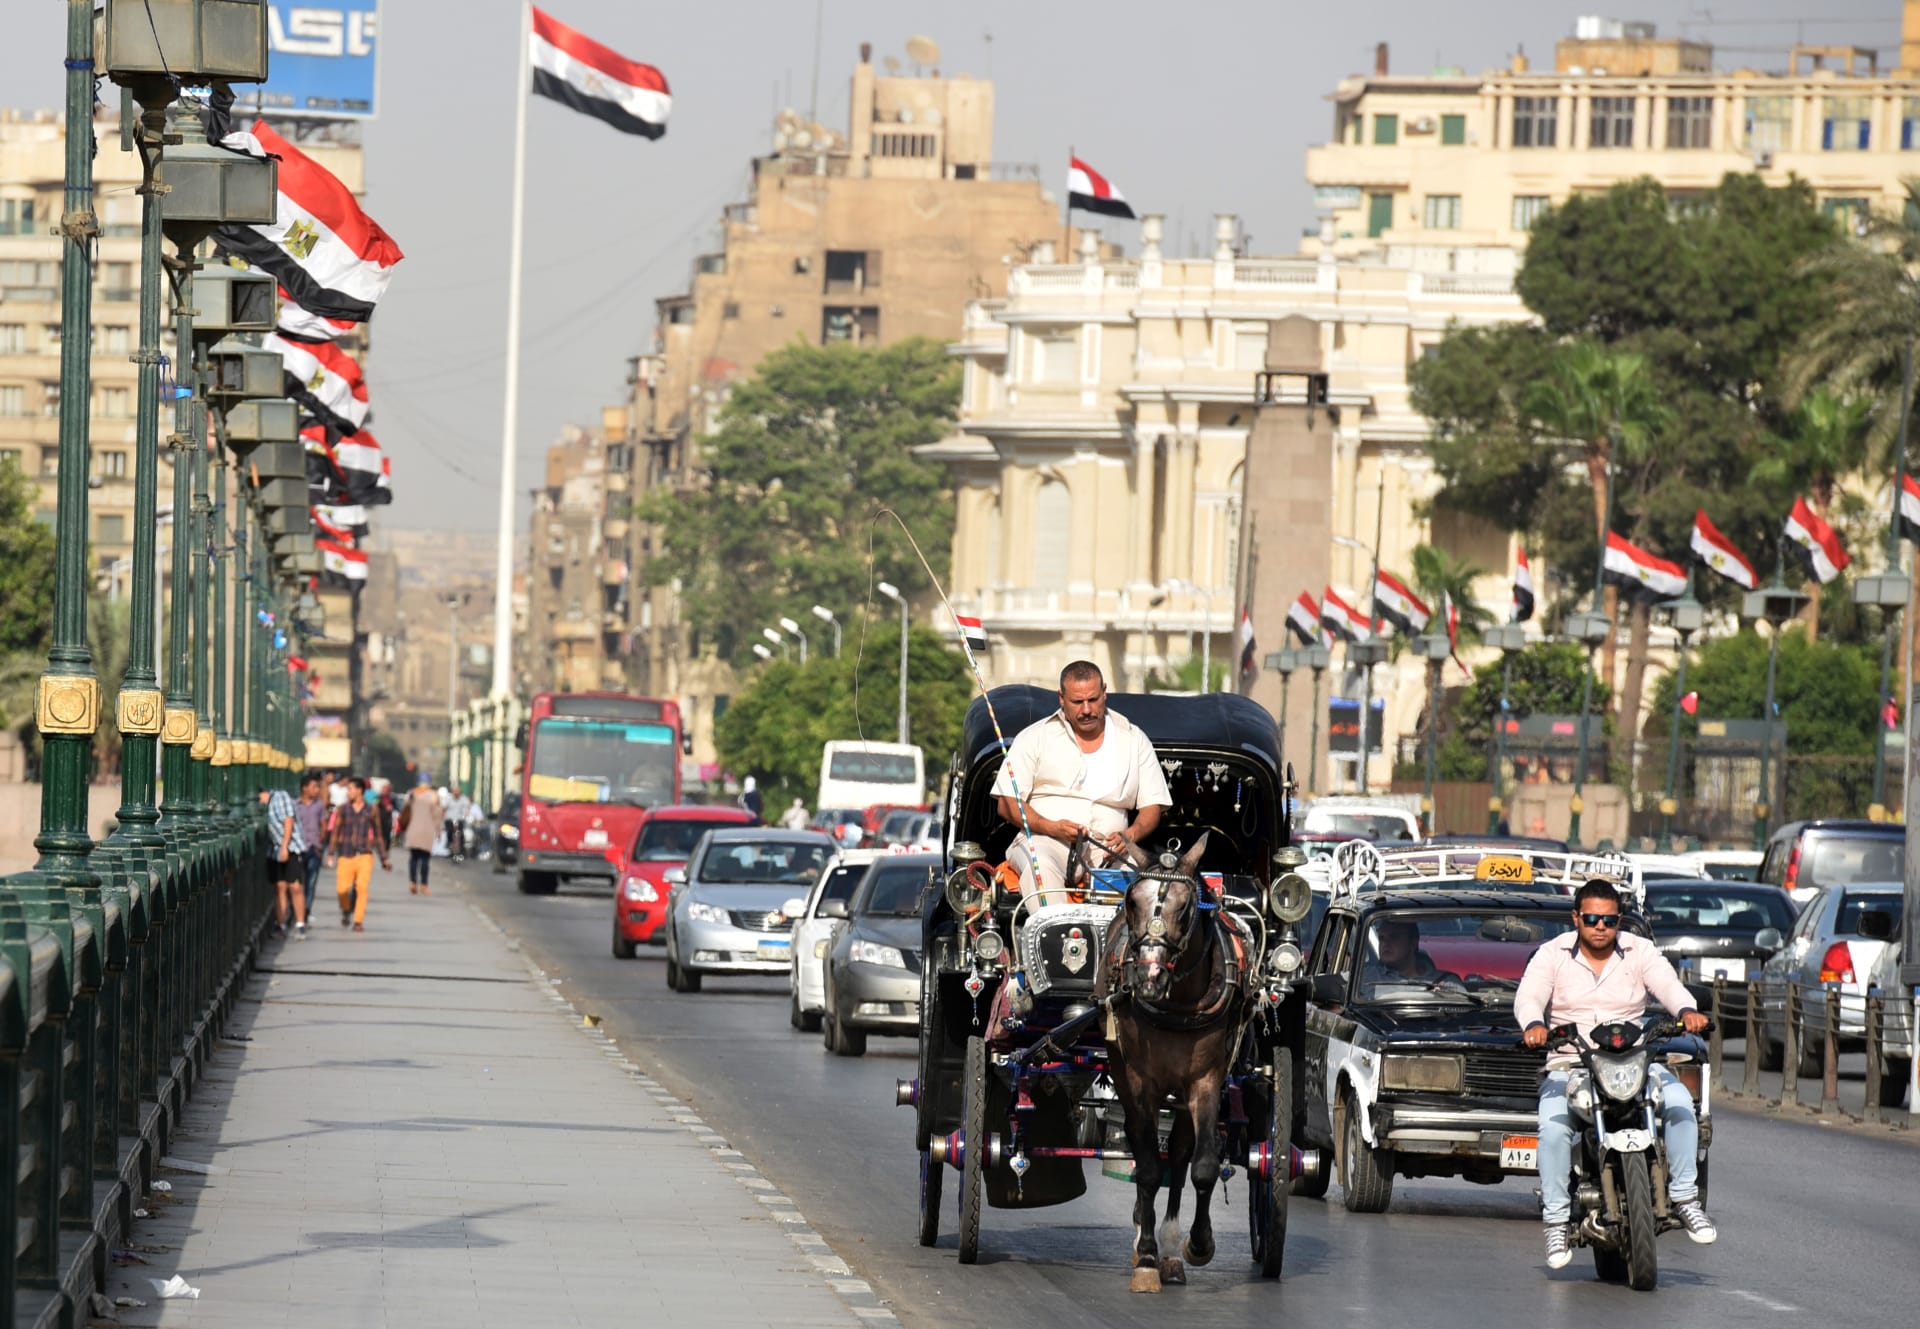 المنطقة في "حرب شوارع".. القاهرة تزيل اسم سلطان عثماني